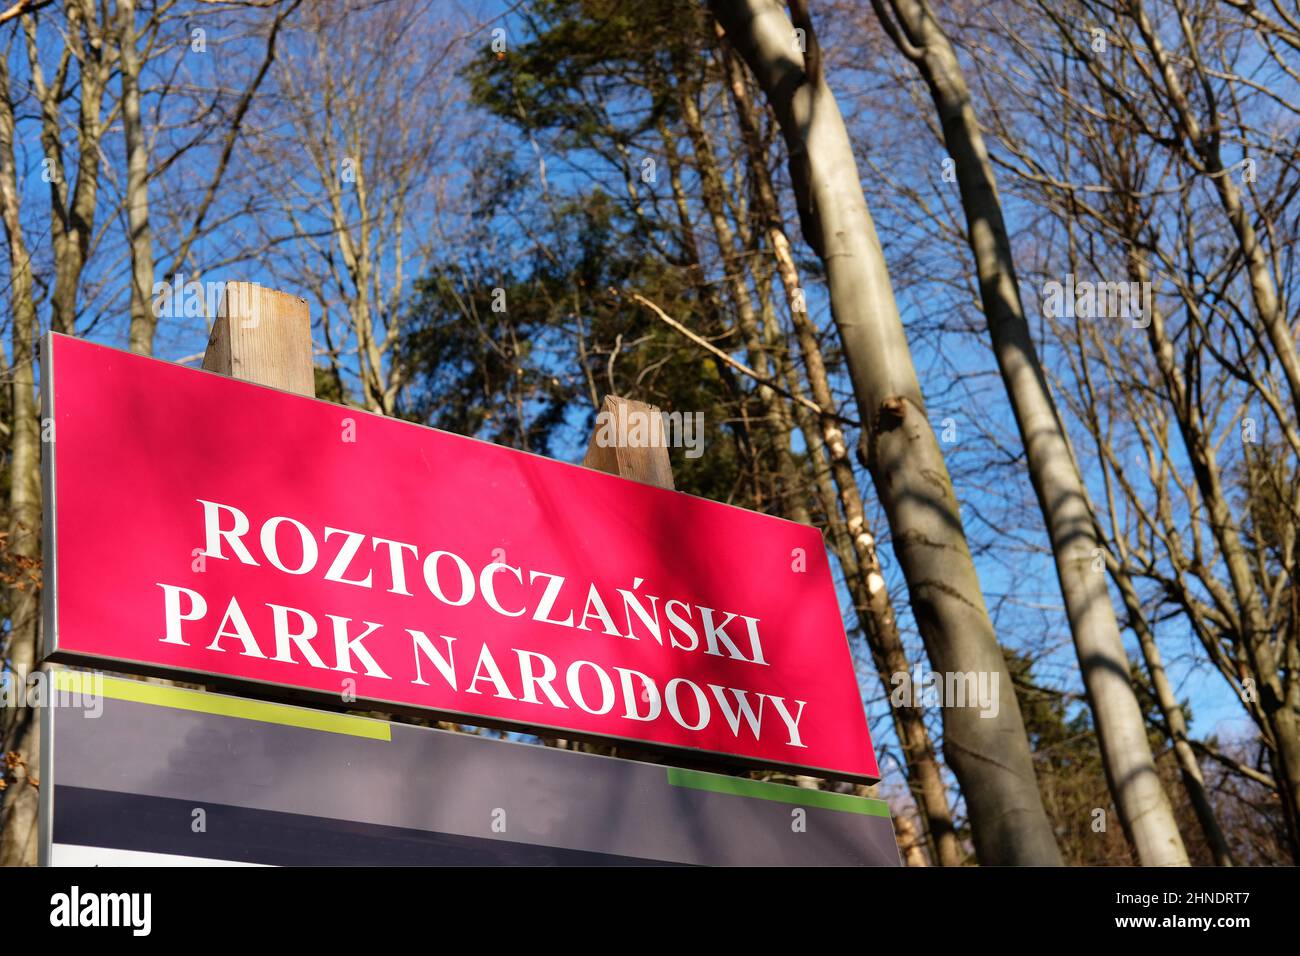 Panneau marquant l'entrée du parc Roztoczanski Narodowy (qui se traduit par « Parc national de Roztocze ») dans l'est de la Pologne Banque D'Images